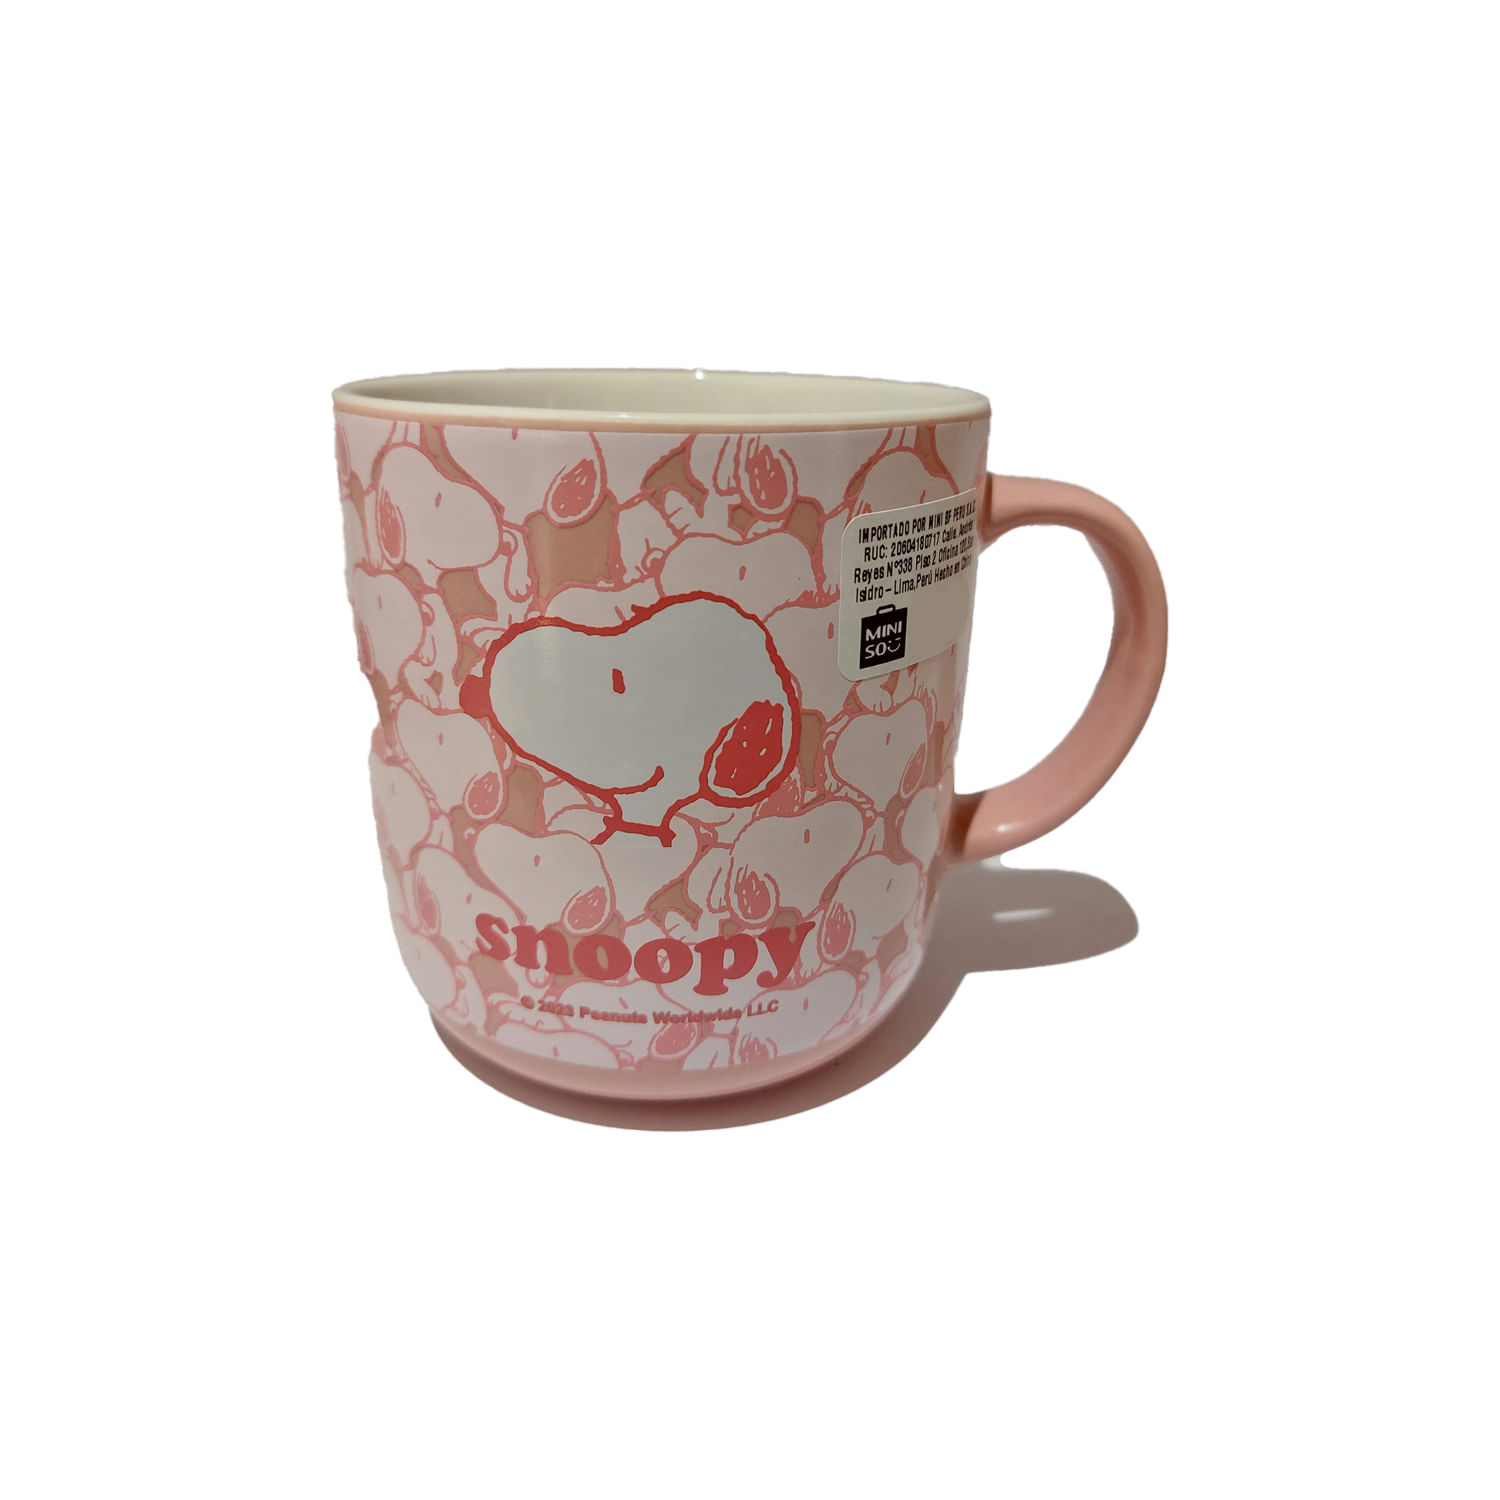  MINISO Taza de café de cerámica arcoíris con posavasos y asa,  tazas de café de porcelana de 3.8 onzas, taza de té de cerámica, tazas de  regalo novedosas para café, té